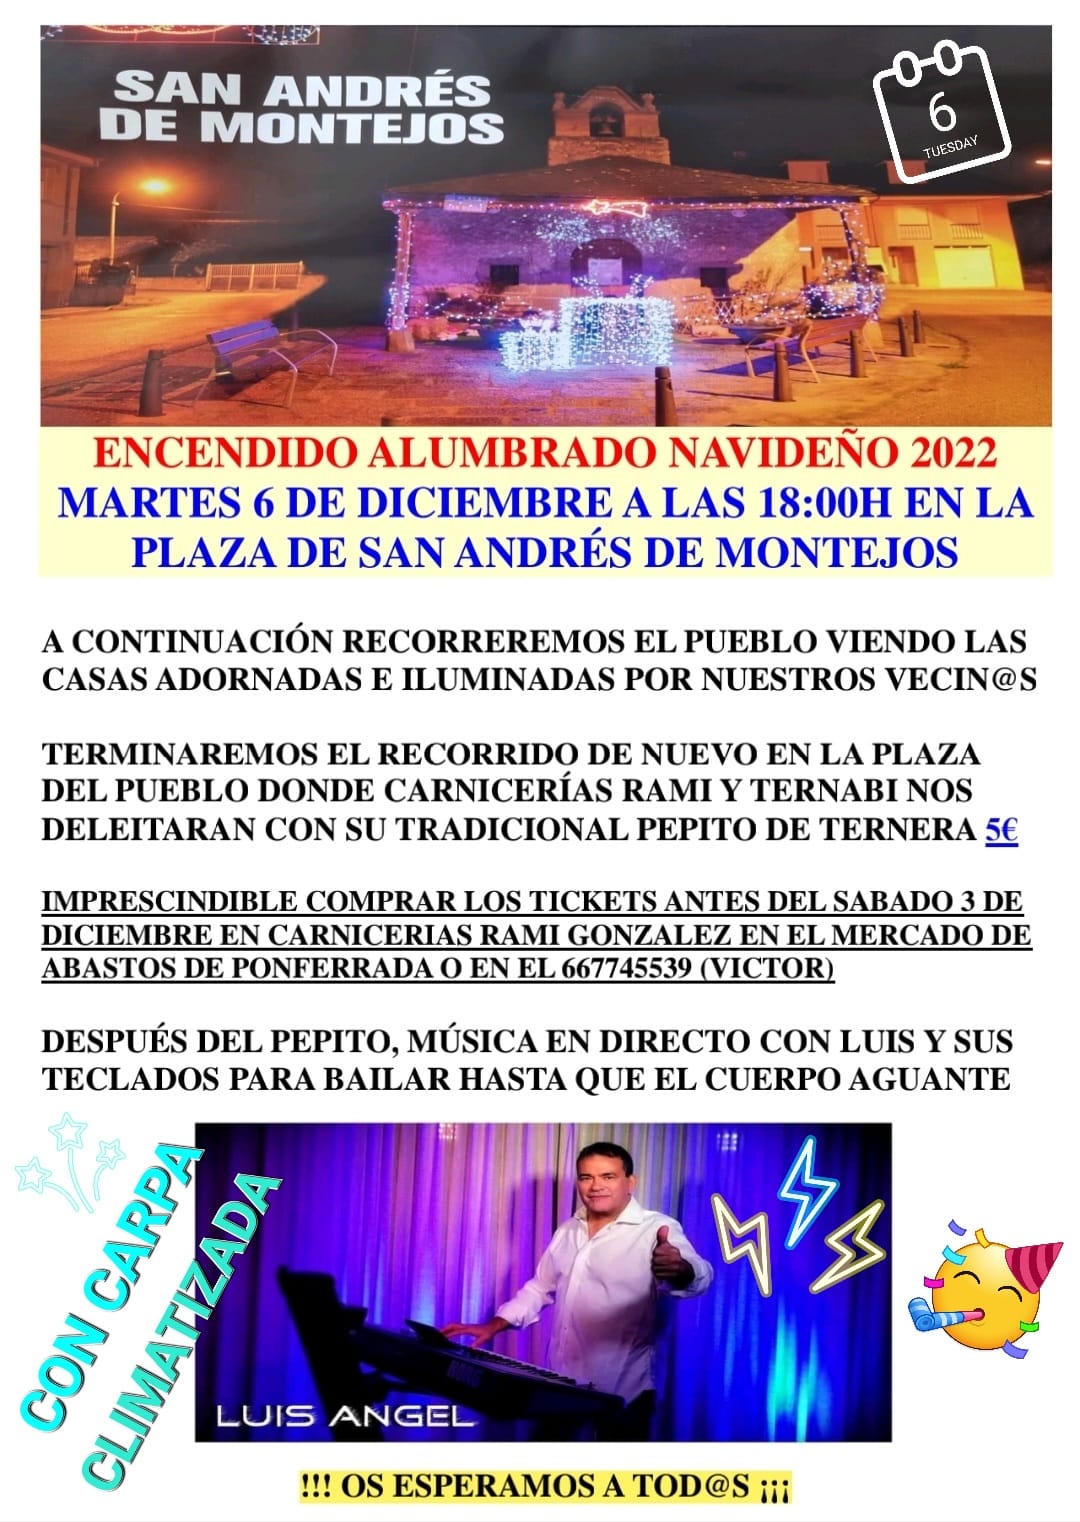 San Andrés de Montejos celebra la inauguración de su alumbrado navideño el próximo 6 de diciembre 2